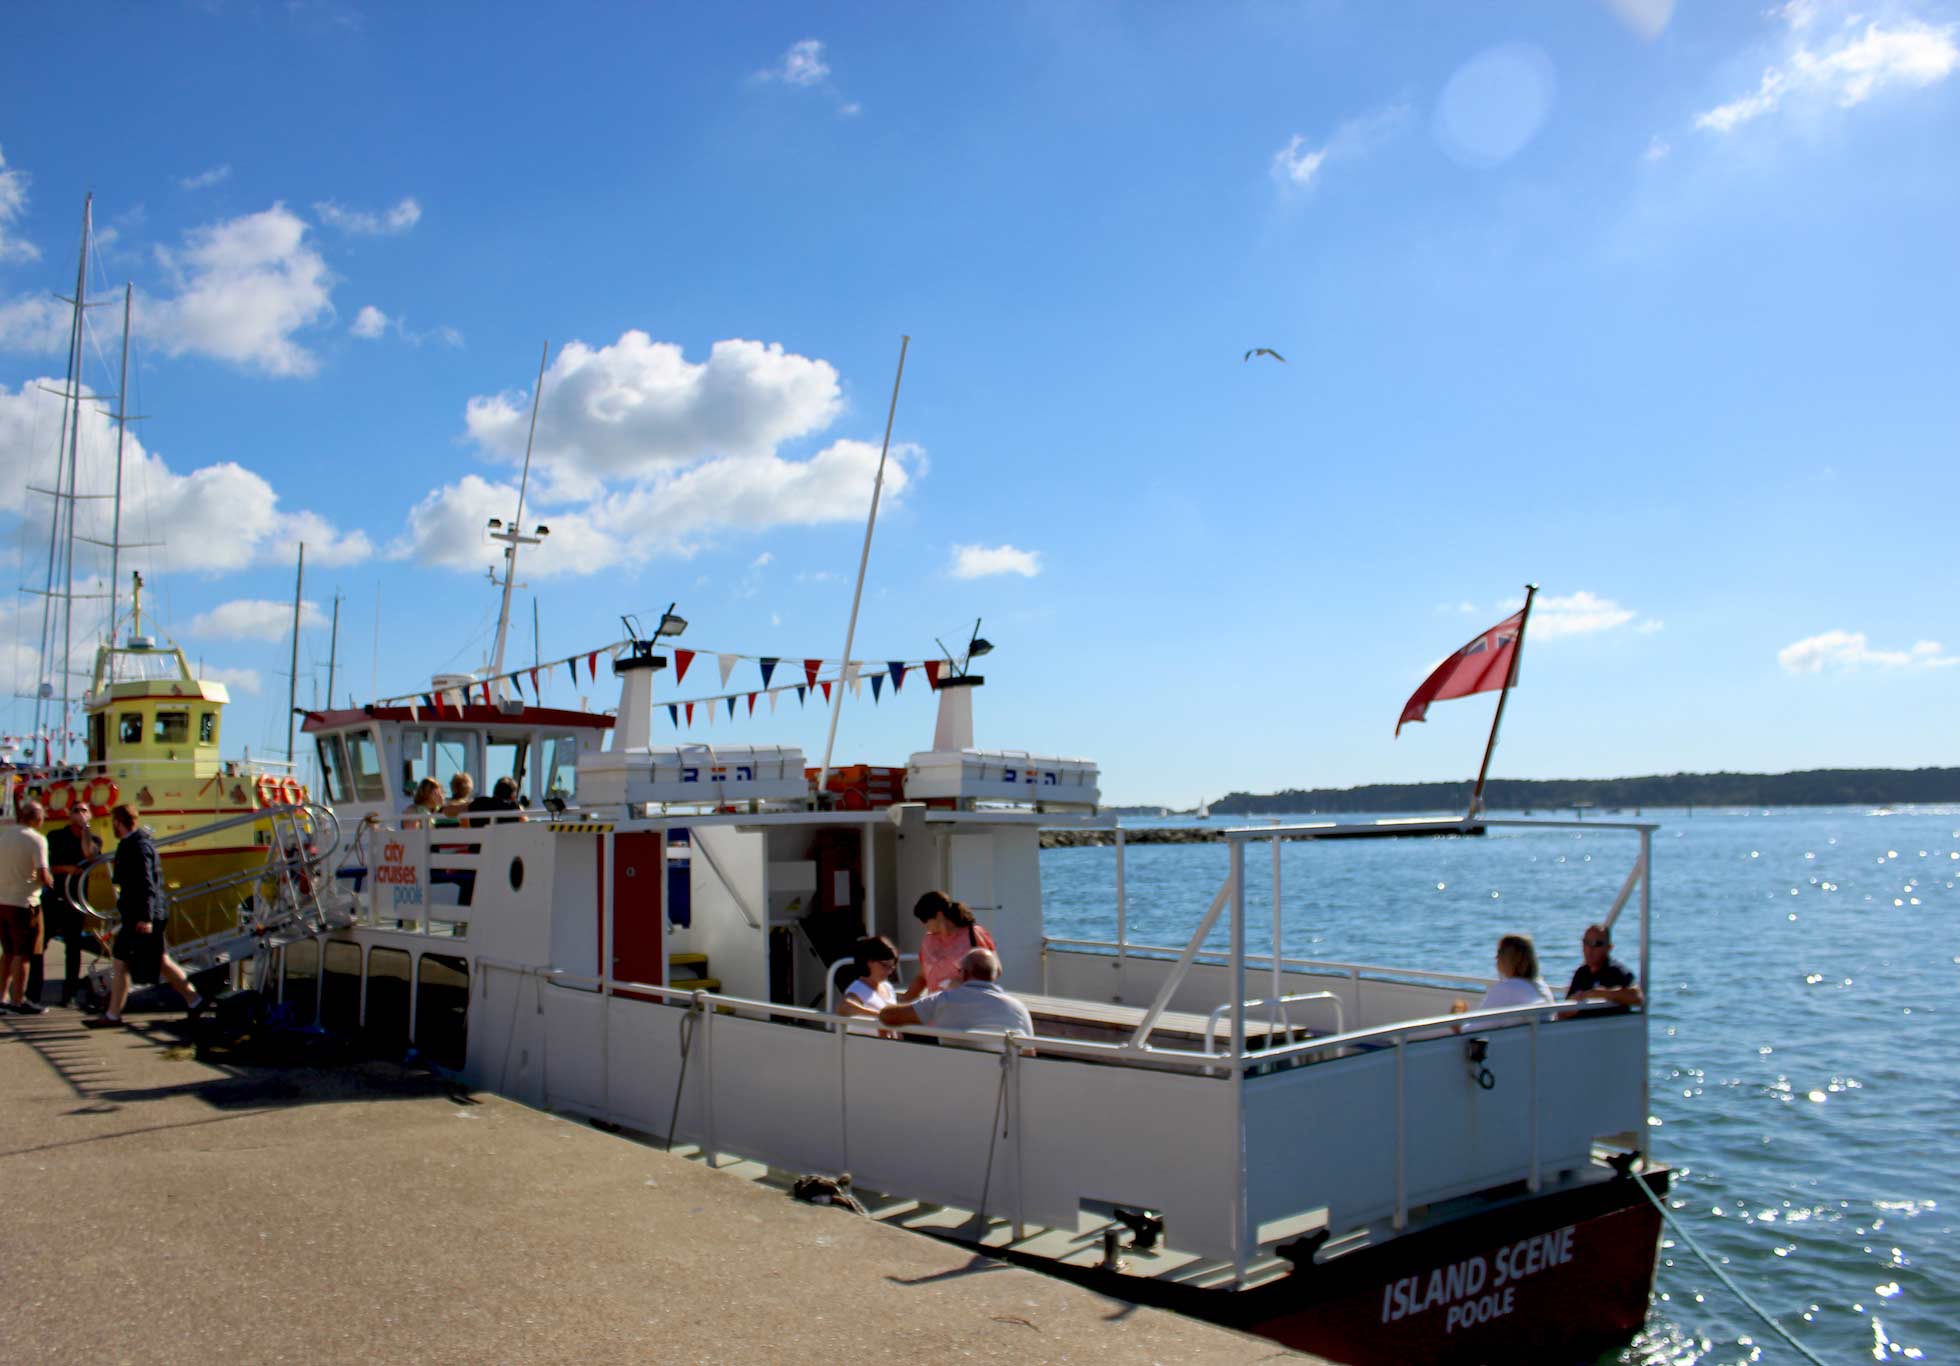 Island Scene : un petit bateau amarré à Poole avec des personnes assises sur le pont.